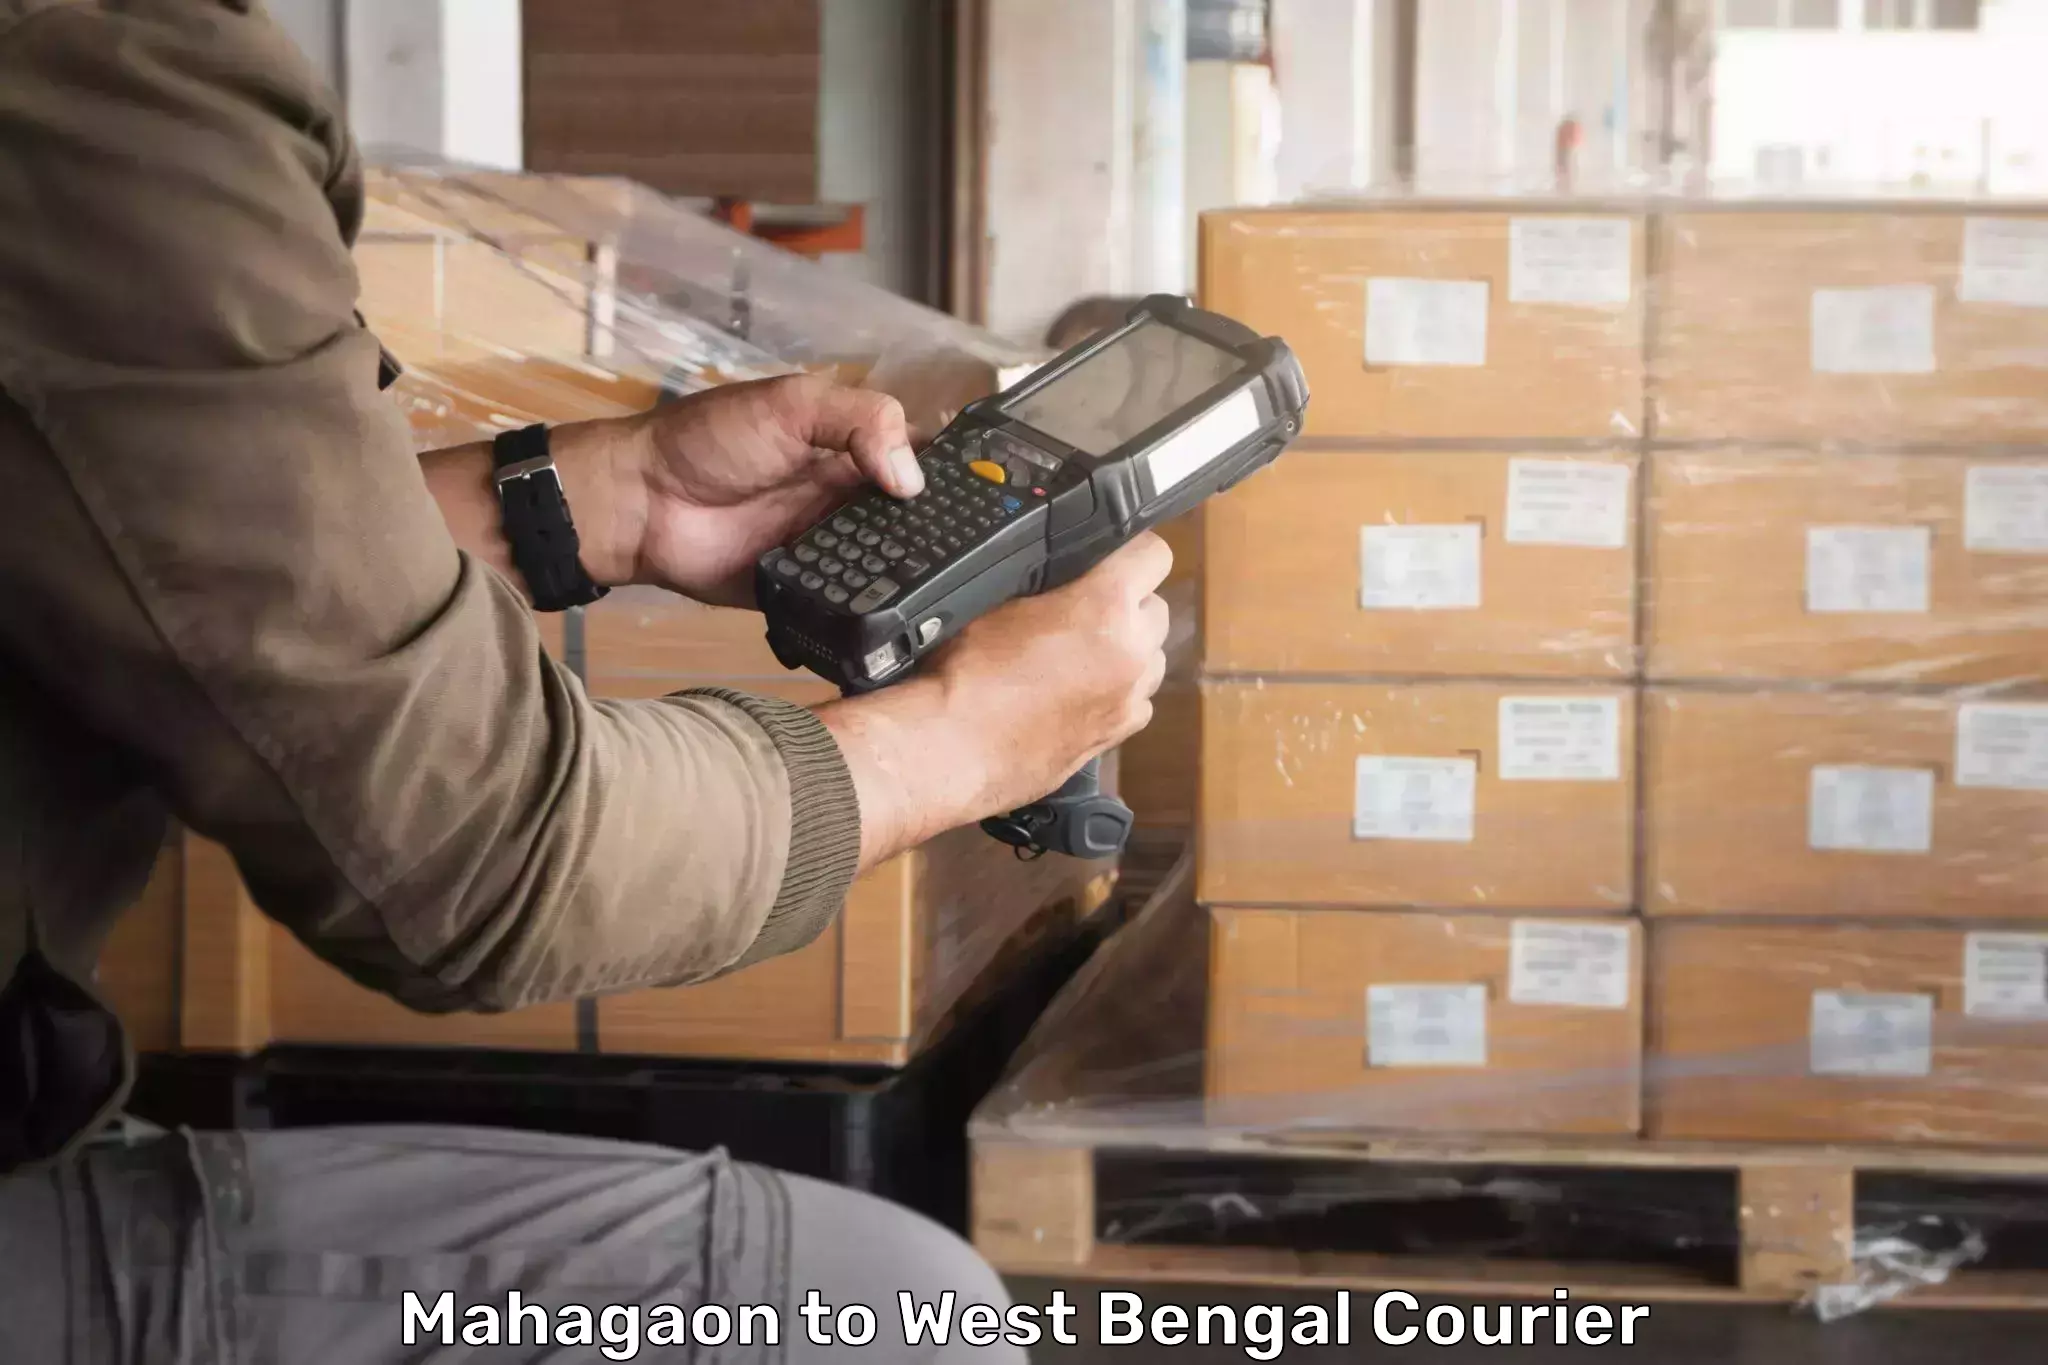 Express logistics Mahagaon to West Bengal